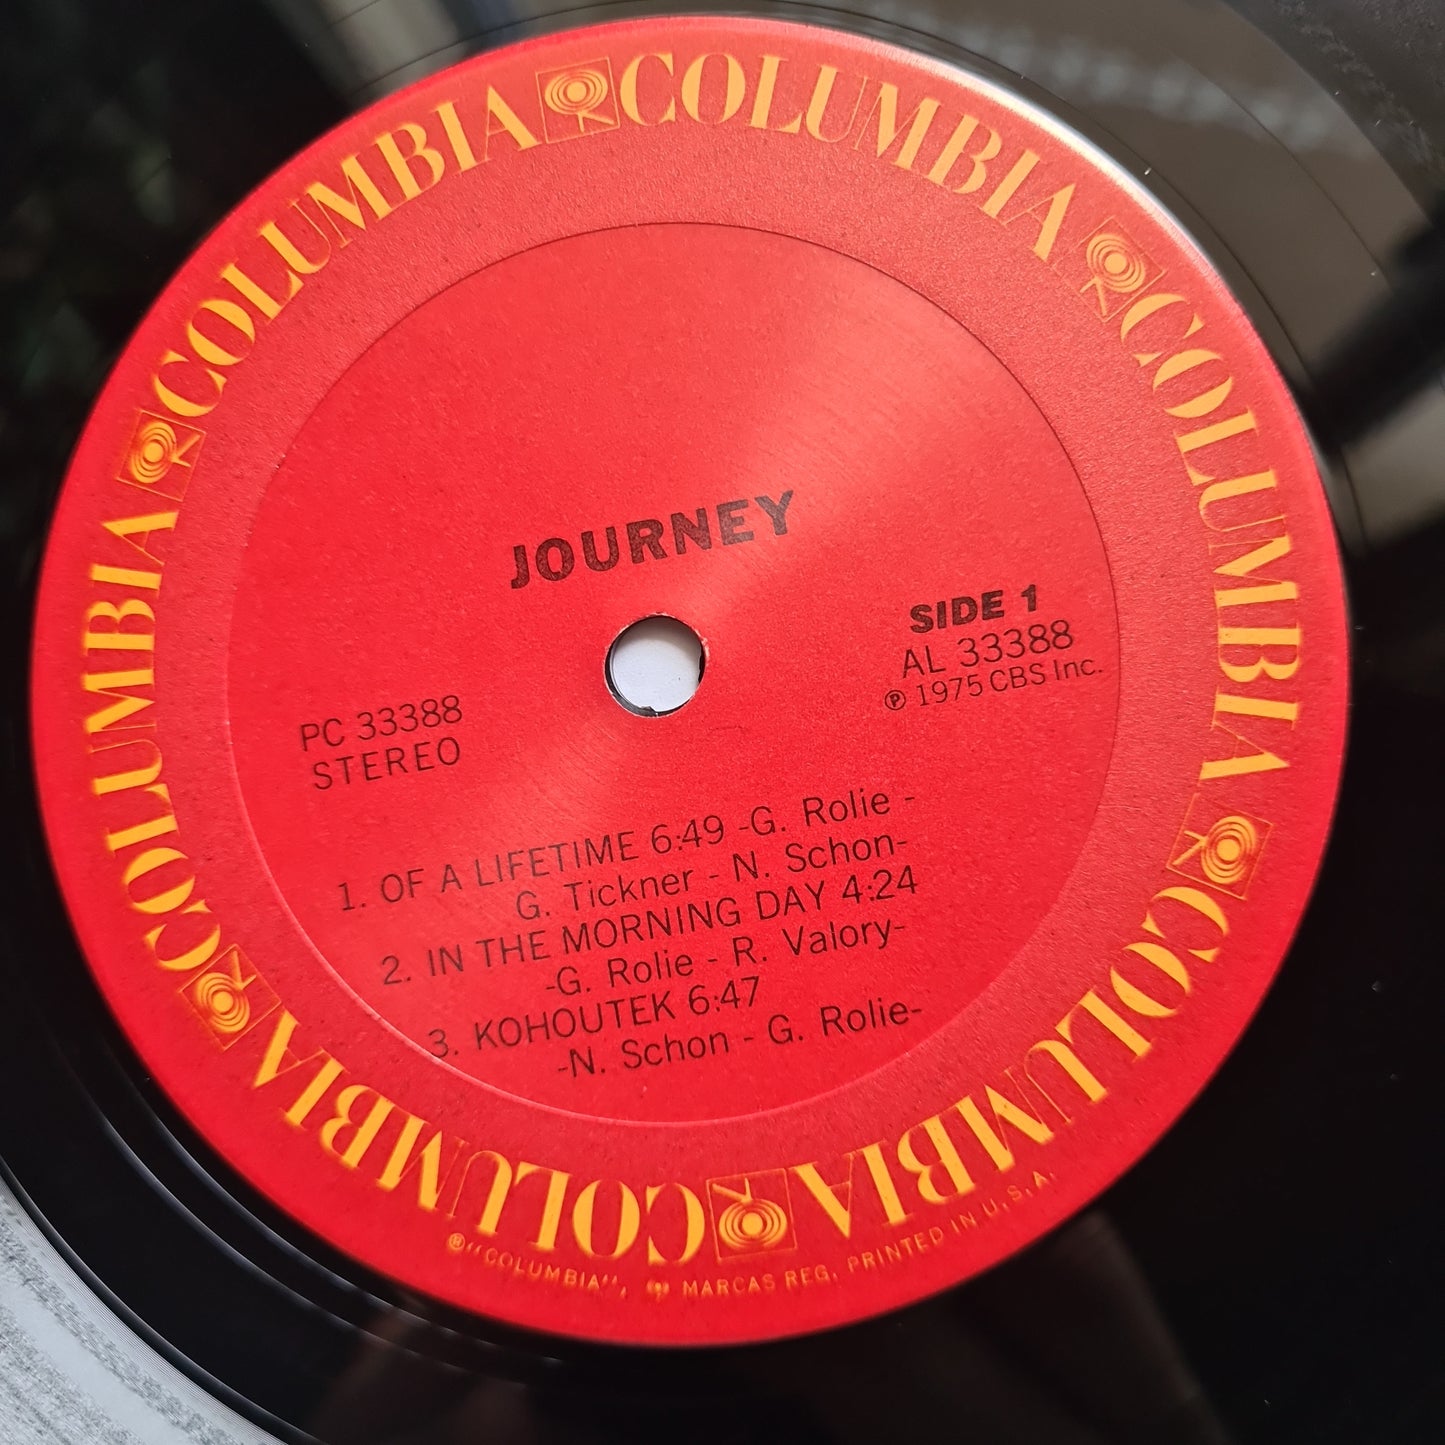 Journey – Journey - 1975 - Vinyl Record